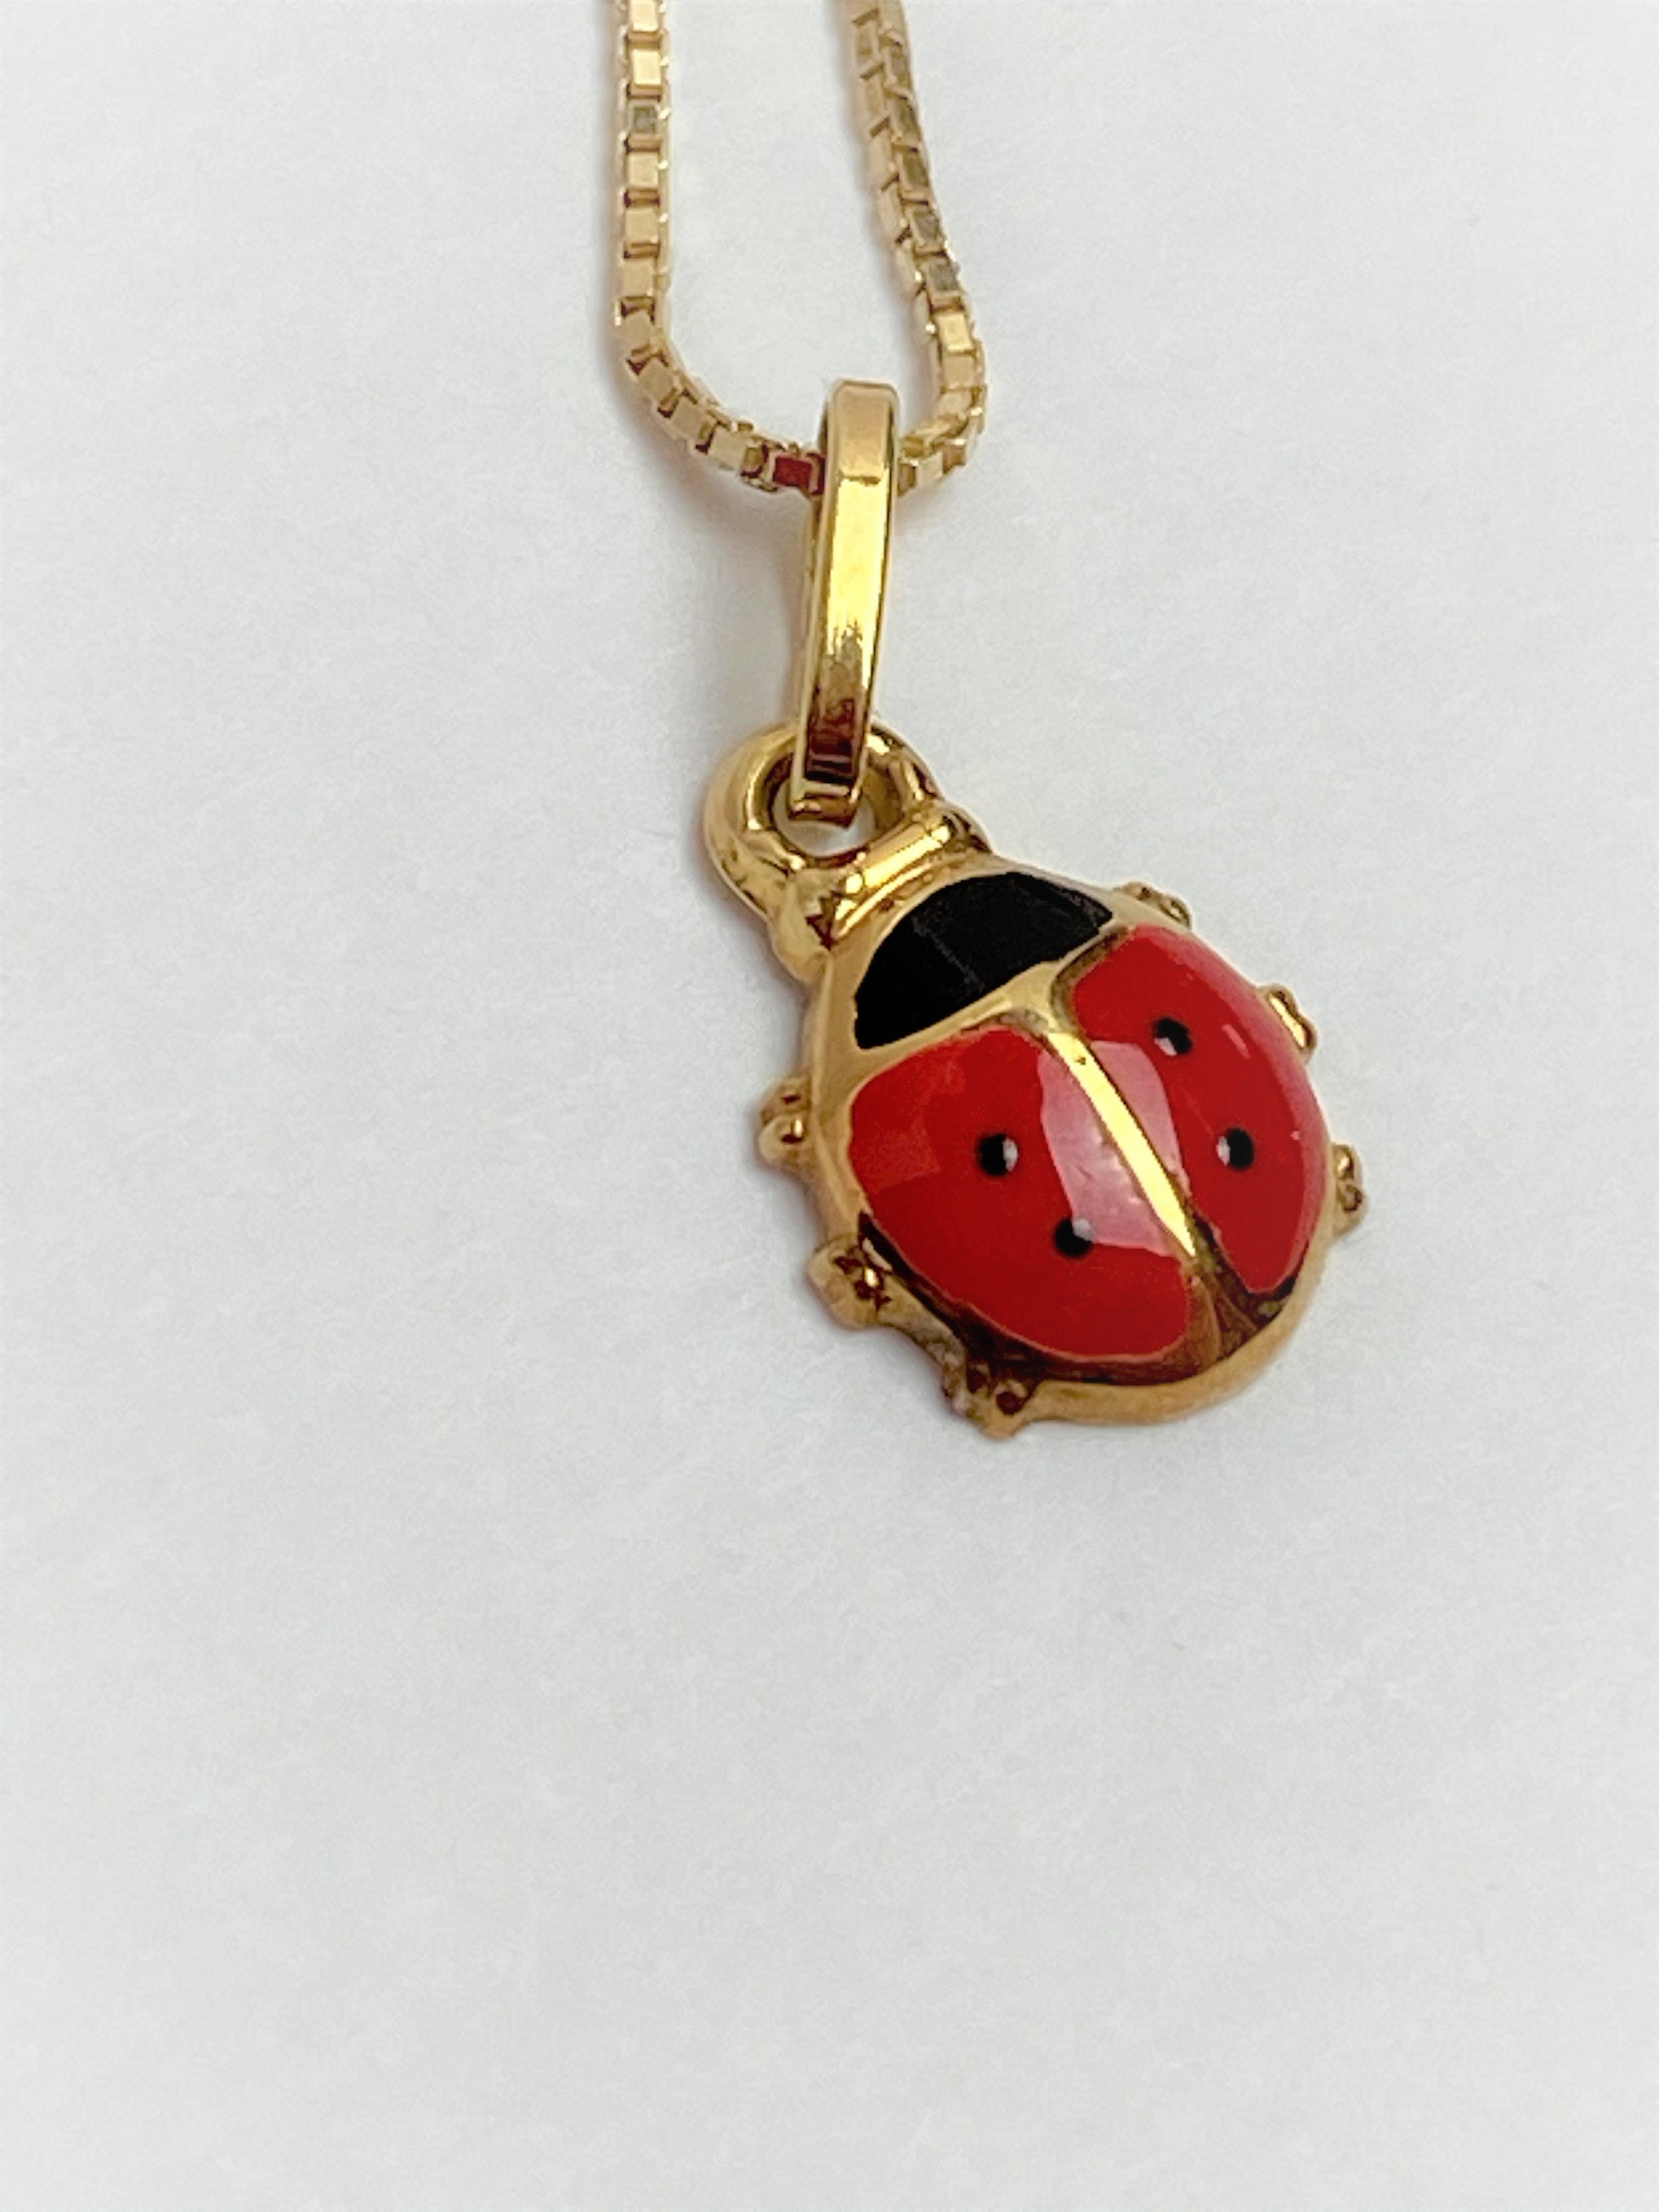 Ladybug Necklace Gold Plating